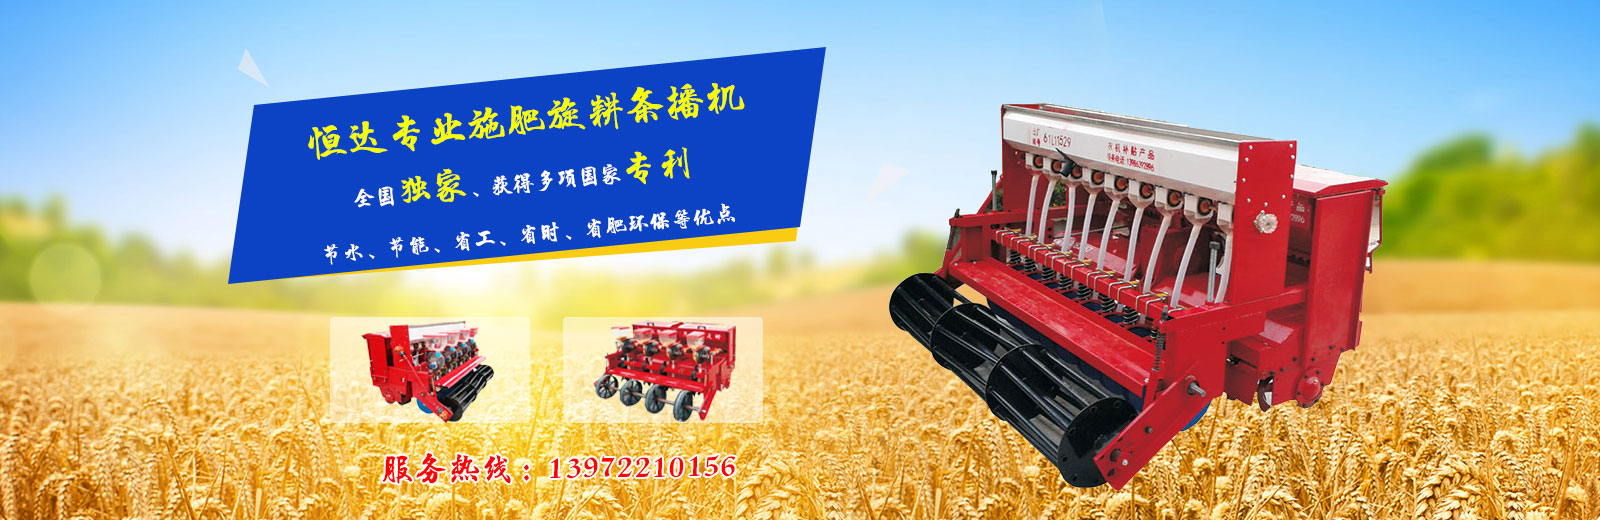 南漳县恒达机械制造销售有限公司